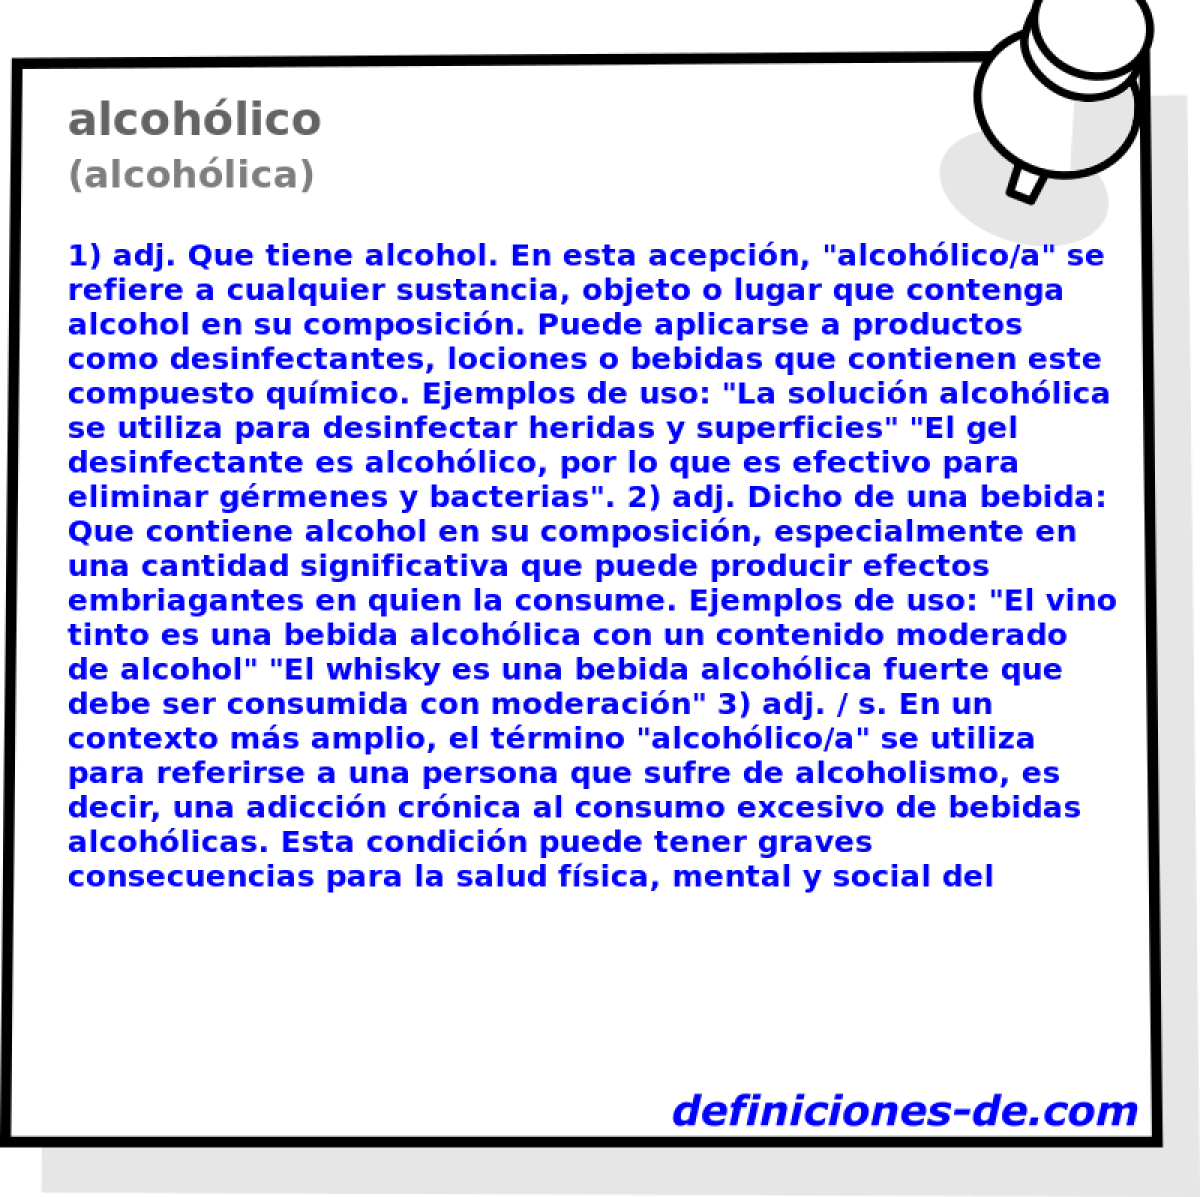 alcohlico (alcohlica)